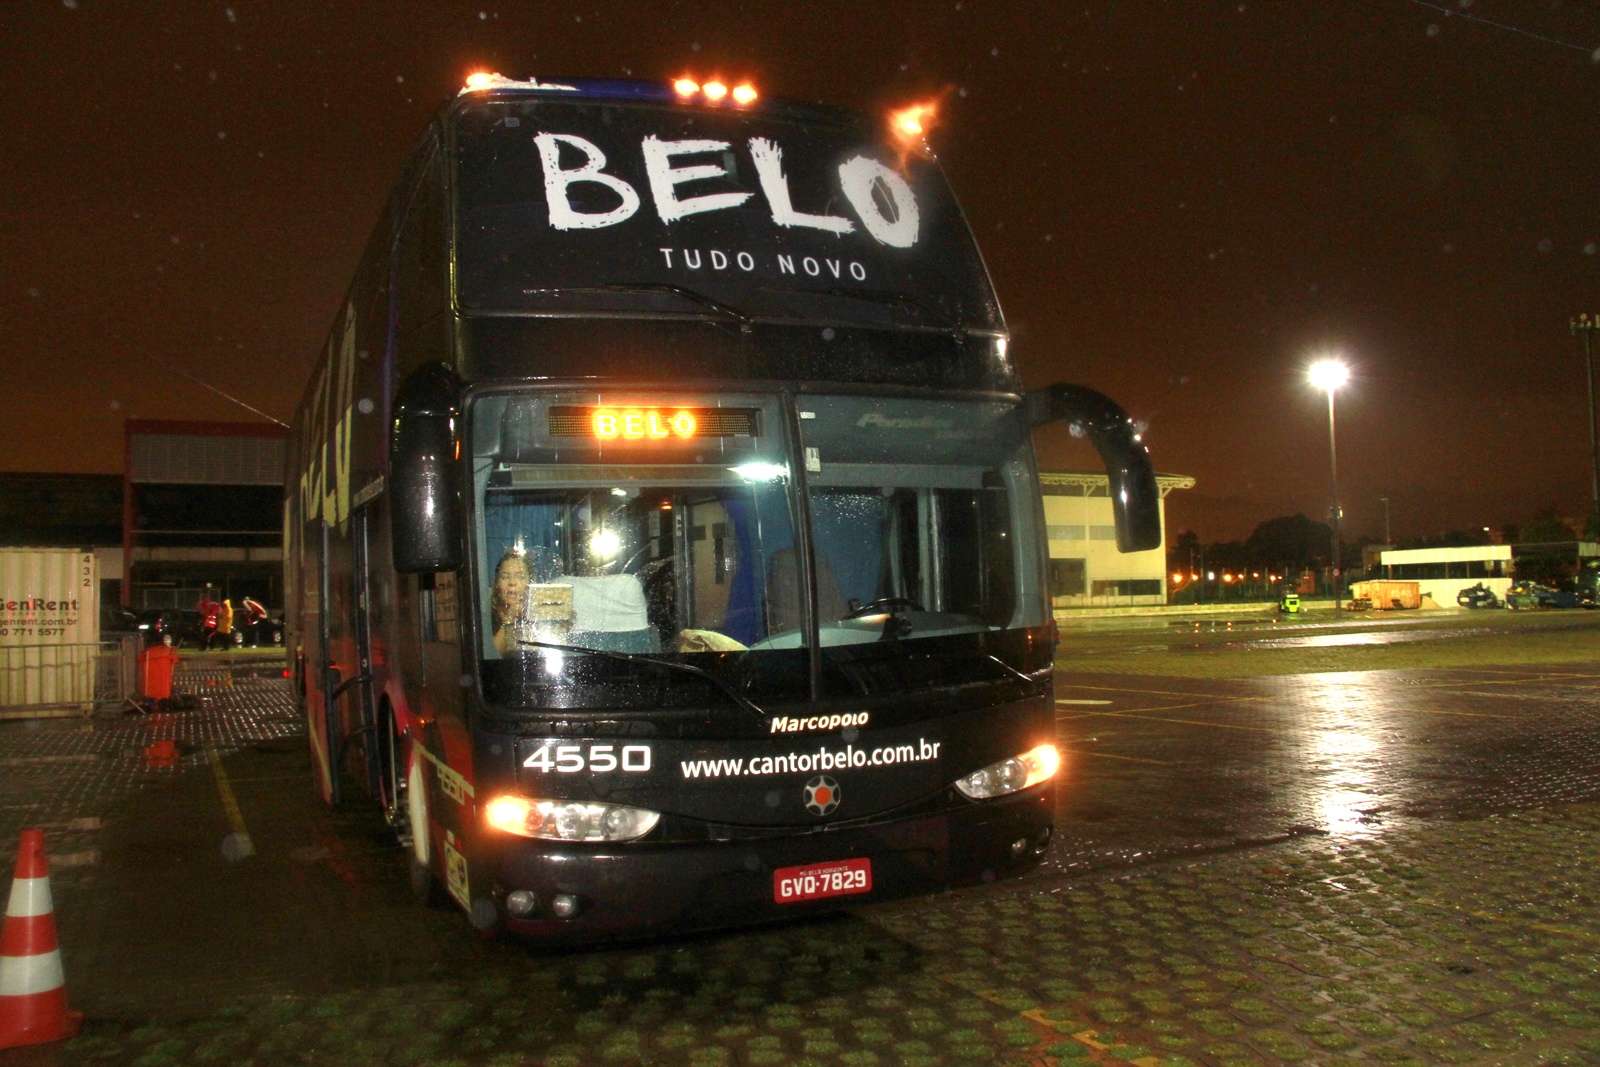 Parte da frente do 'Belomóvel', o ônibus da nova turnê de Belo